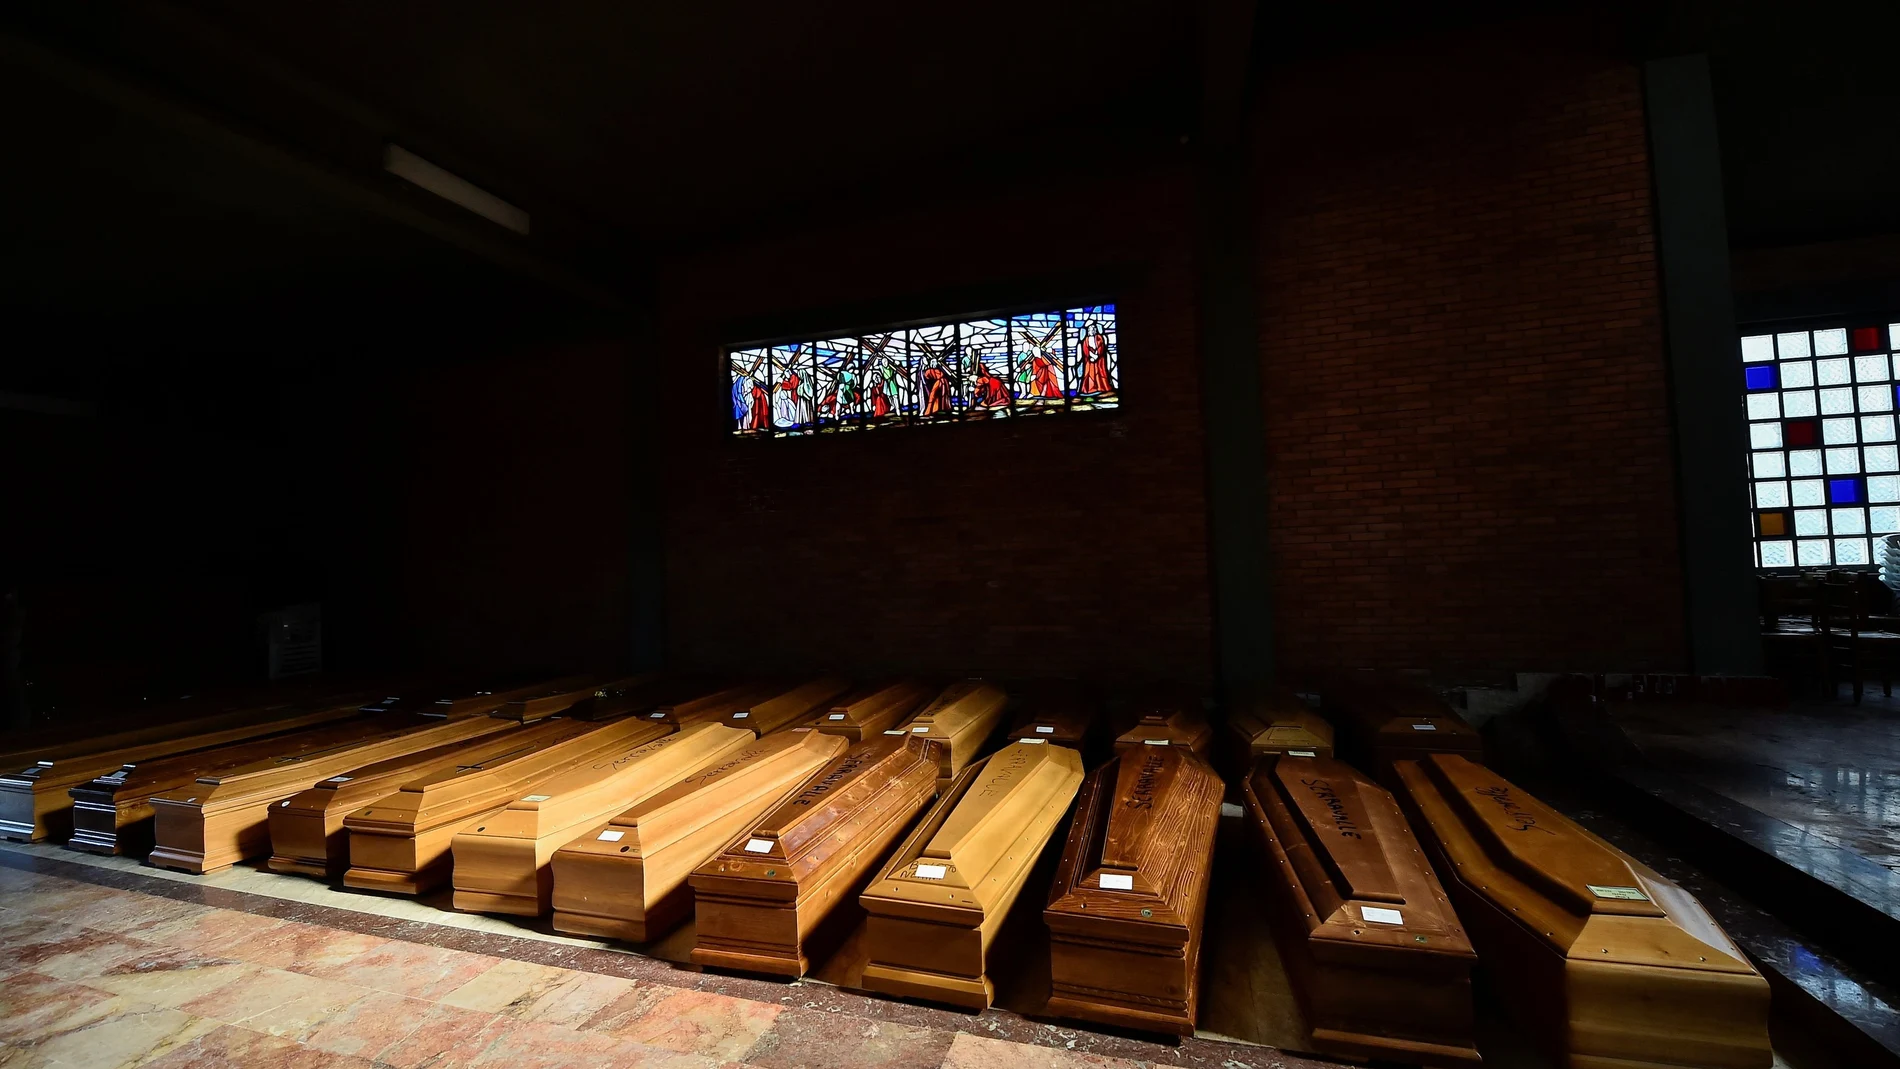 Ataúdes acumulados de víctimas en la Iglesia de Serravalle Scrivia,en el norte de Italia